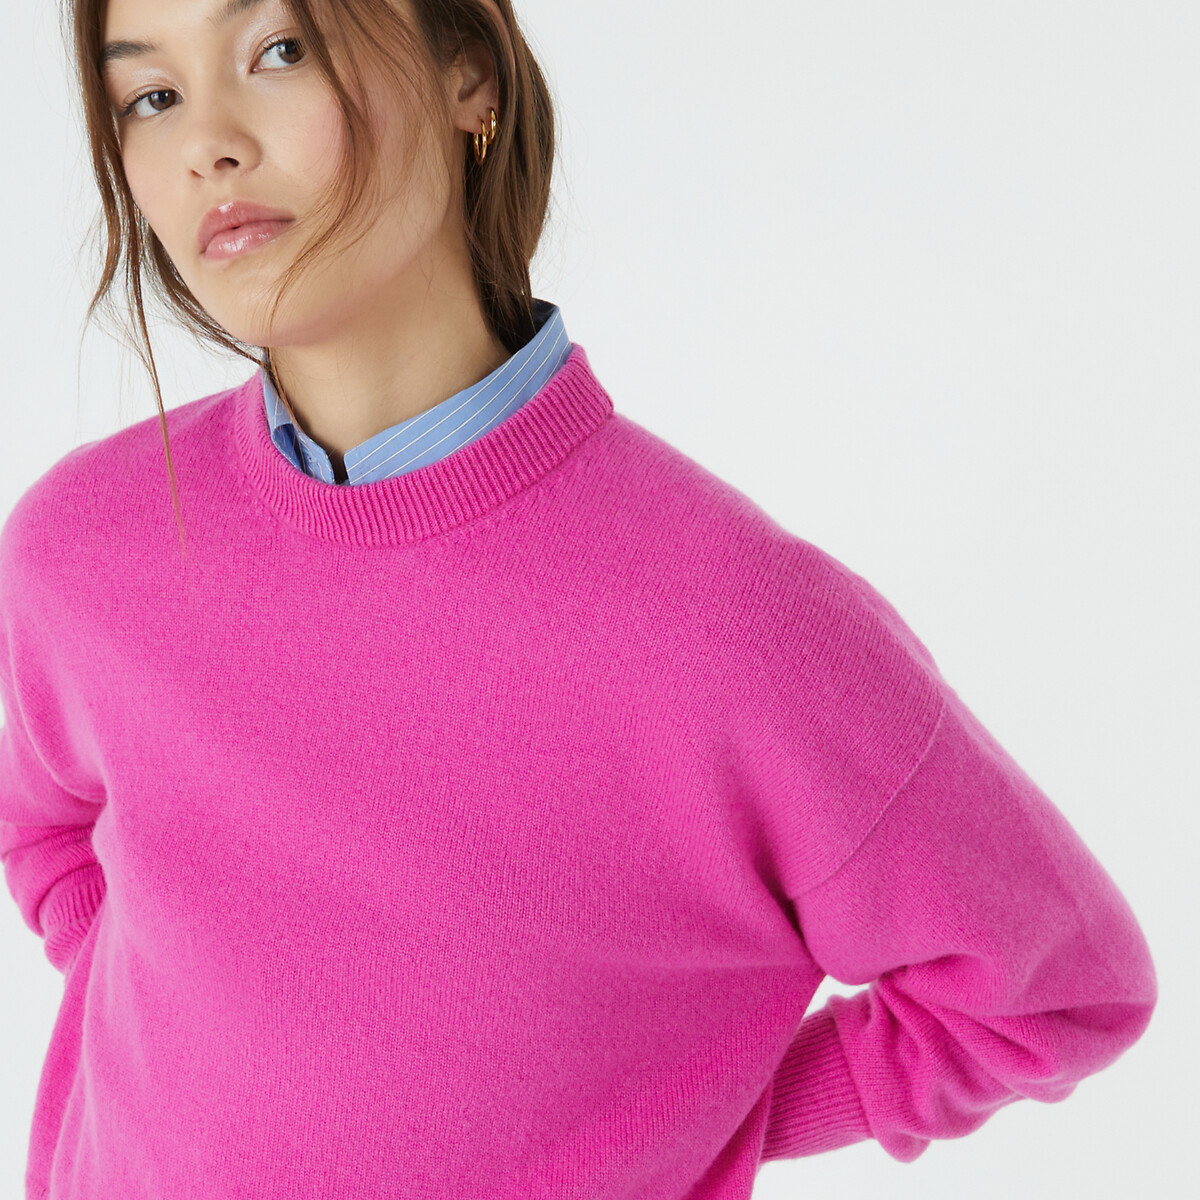 пуловер из кашемира aaron s розовый Пуловер с круглым вырезом из шерсти и кашемира M розовый